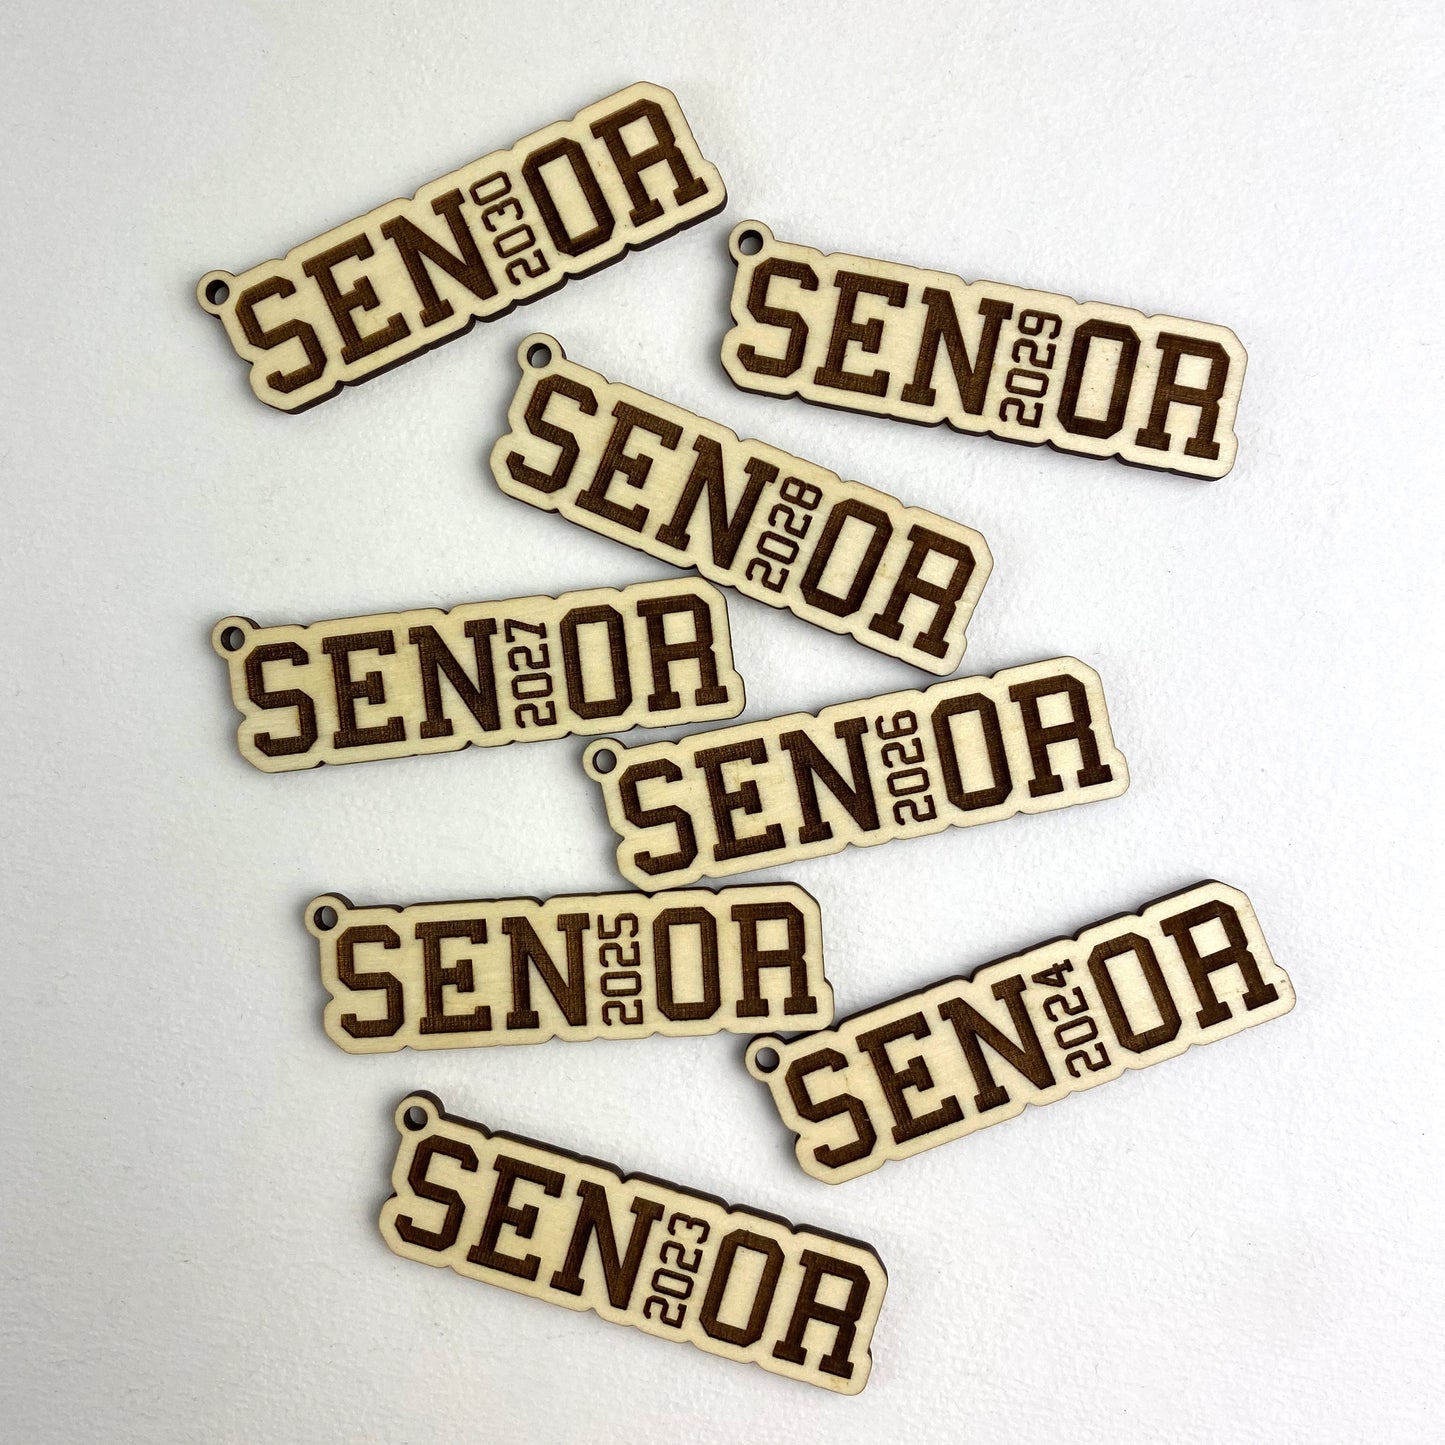 Senior Keychains 2023 - 2030 (Set of 8)